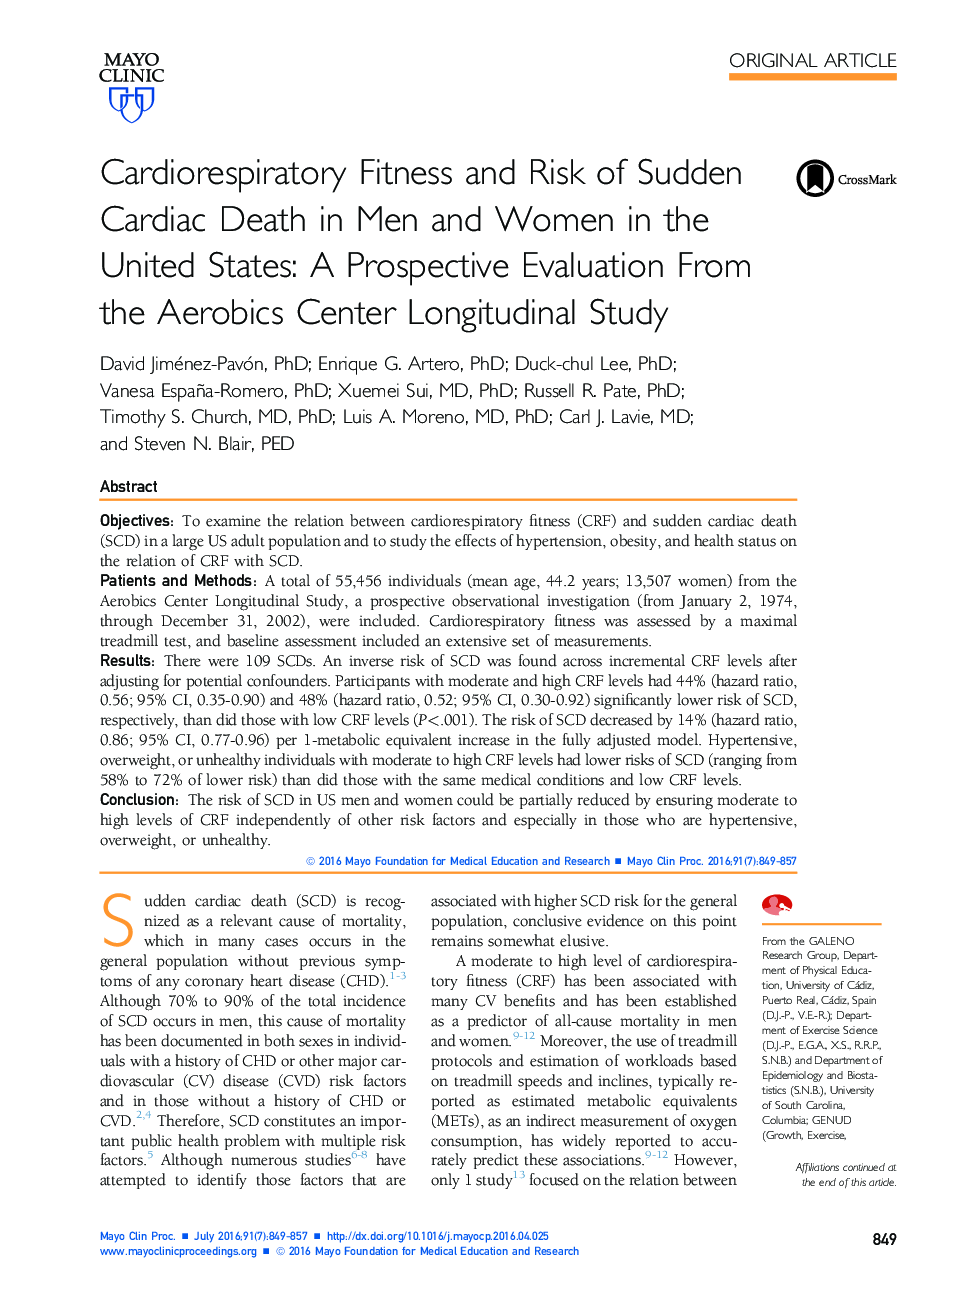 تناسب اندام قلبی عروقی و خطر مرگ ناگهانی قلب در مردان و زنان در ایالات متحده 